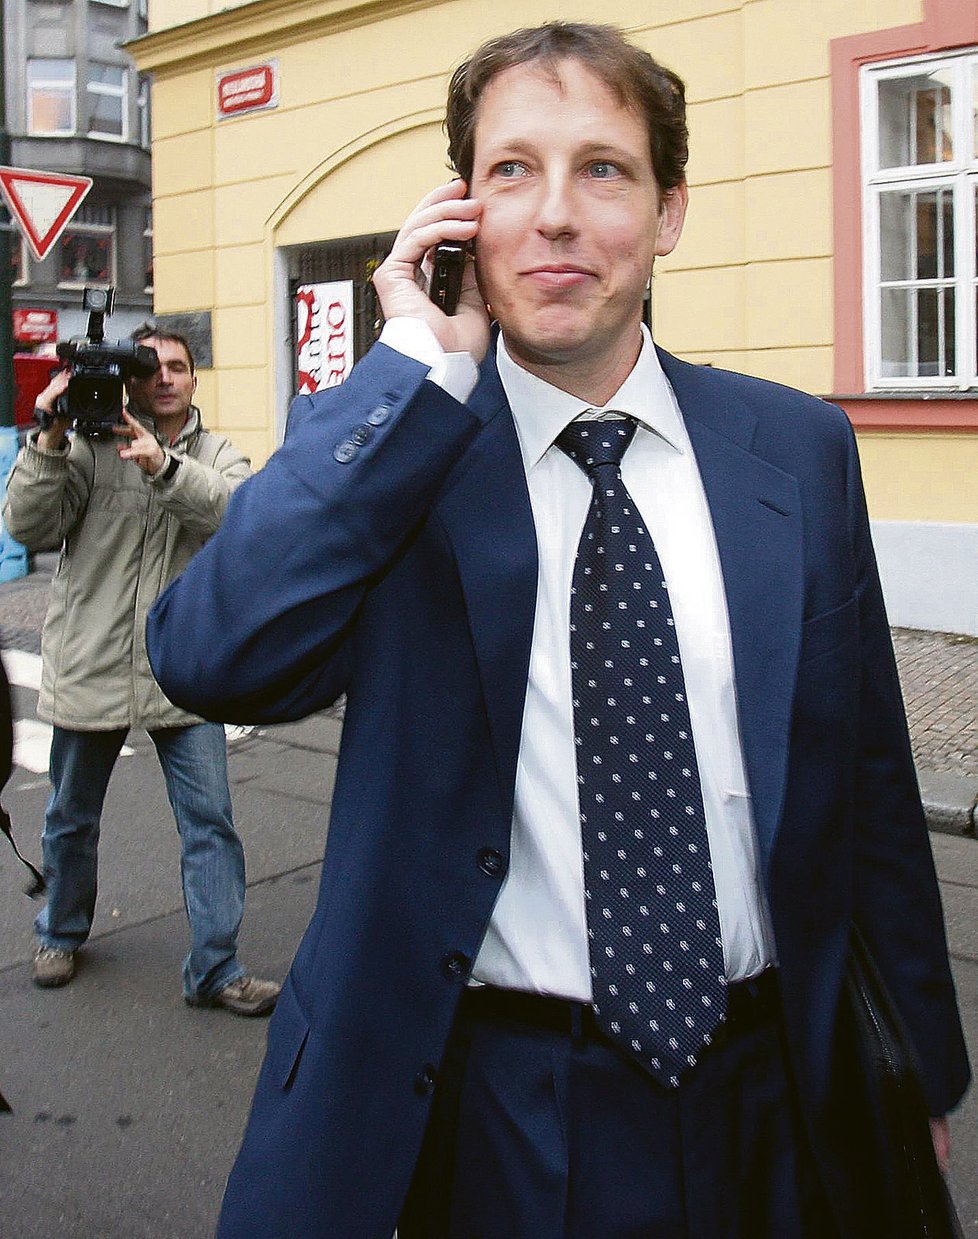 Gross už v březnu 2004 získal titul JUDr. na Západočeské univerzitě v Plzni. Kvalita jeho diplomové práce byla opakovaně zpochybňována.